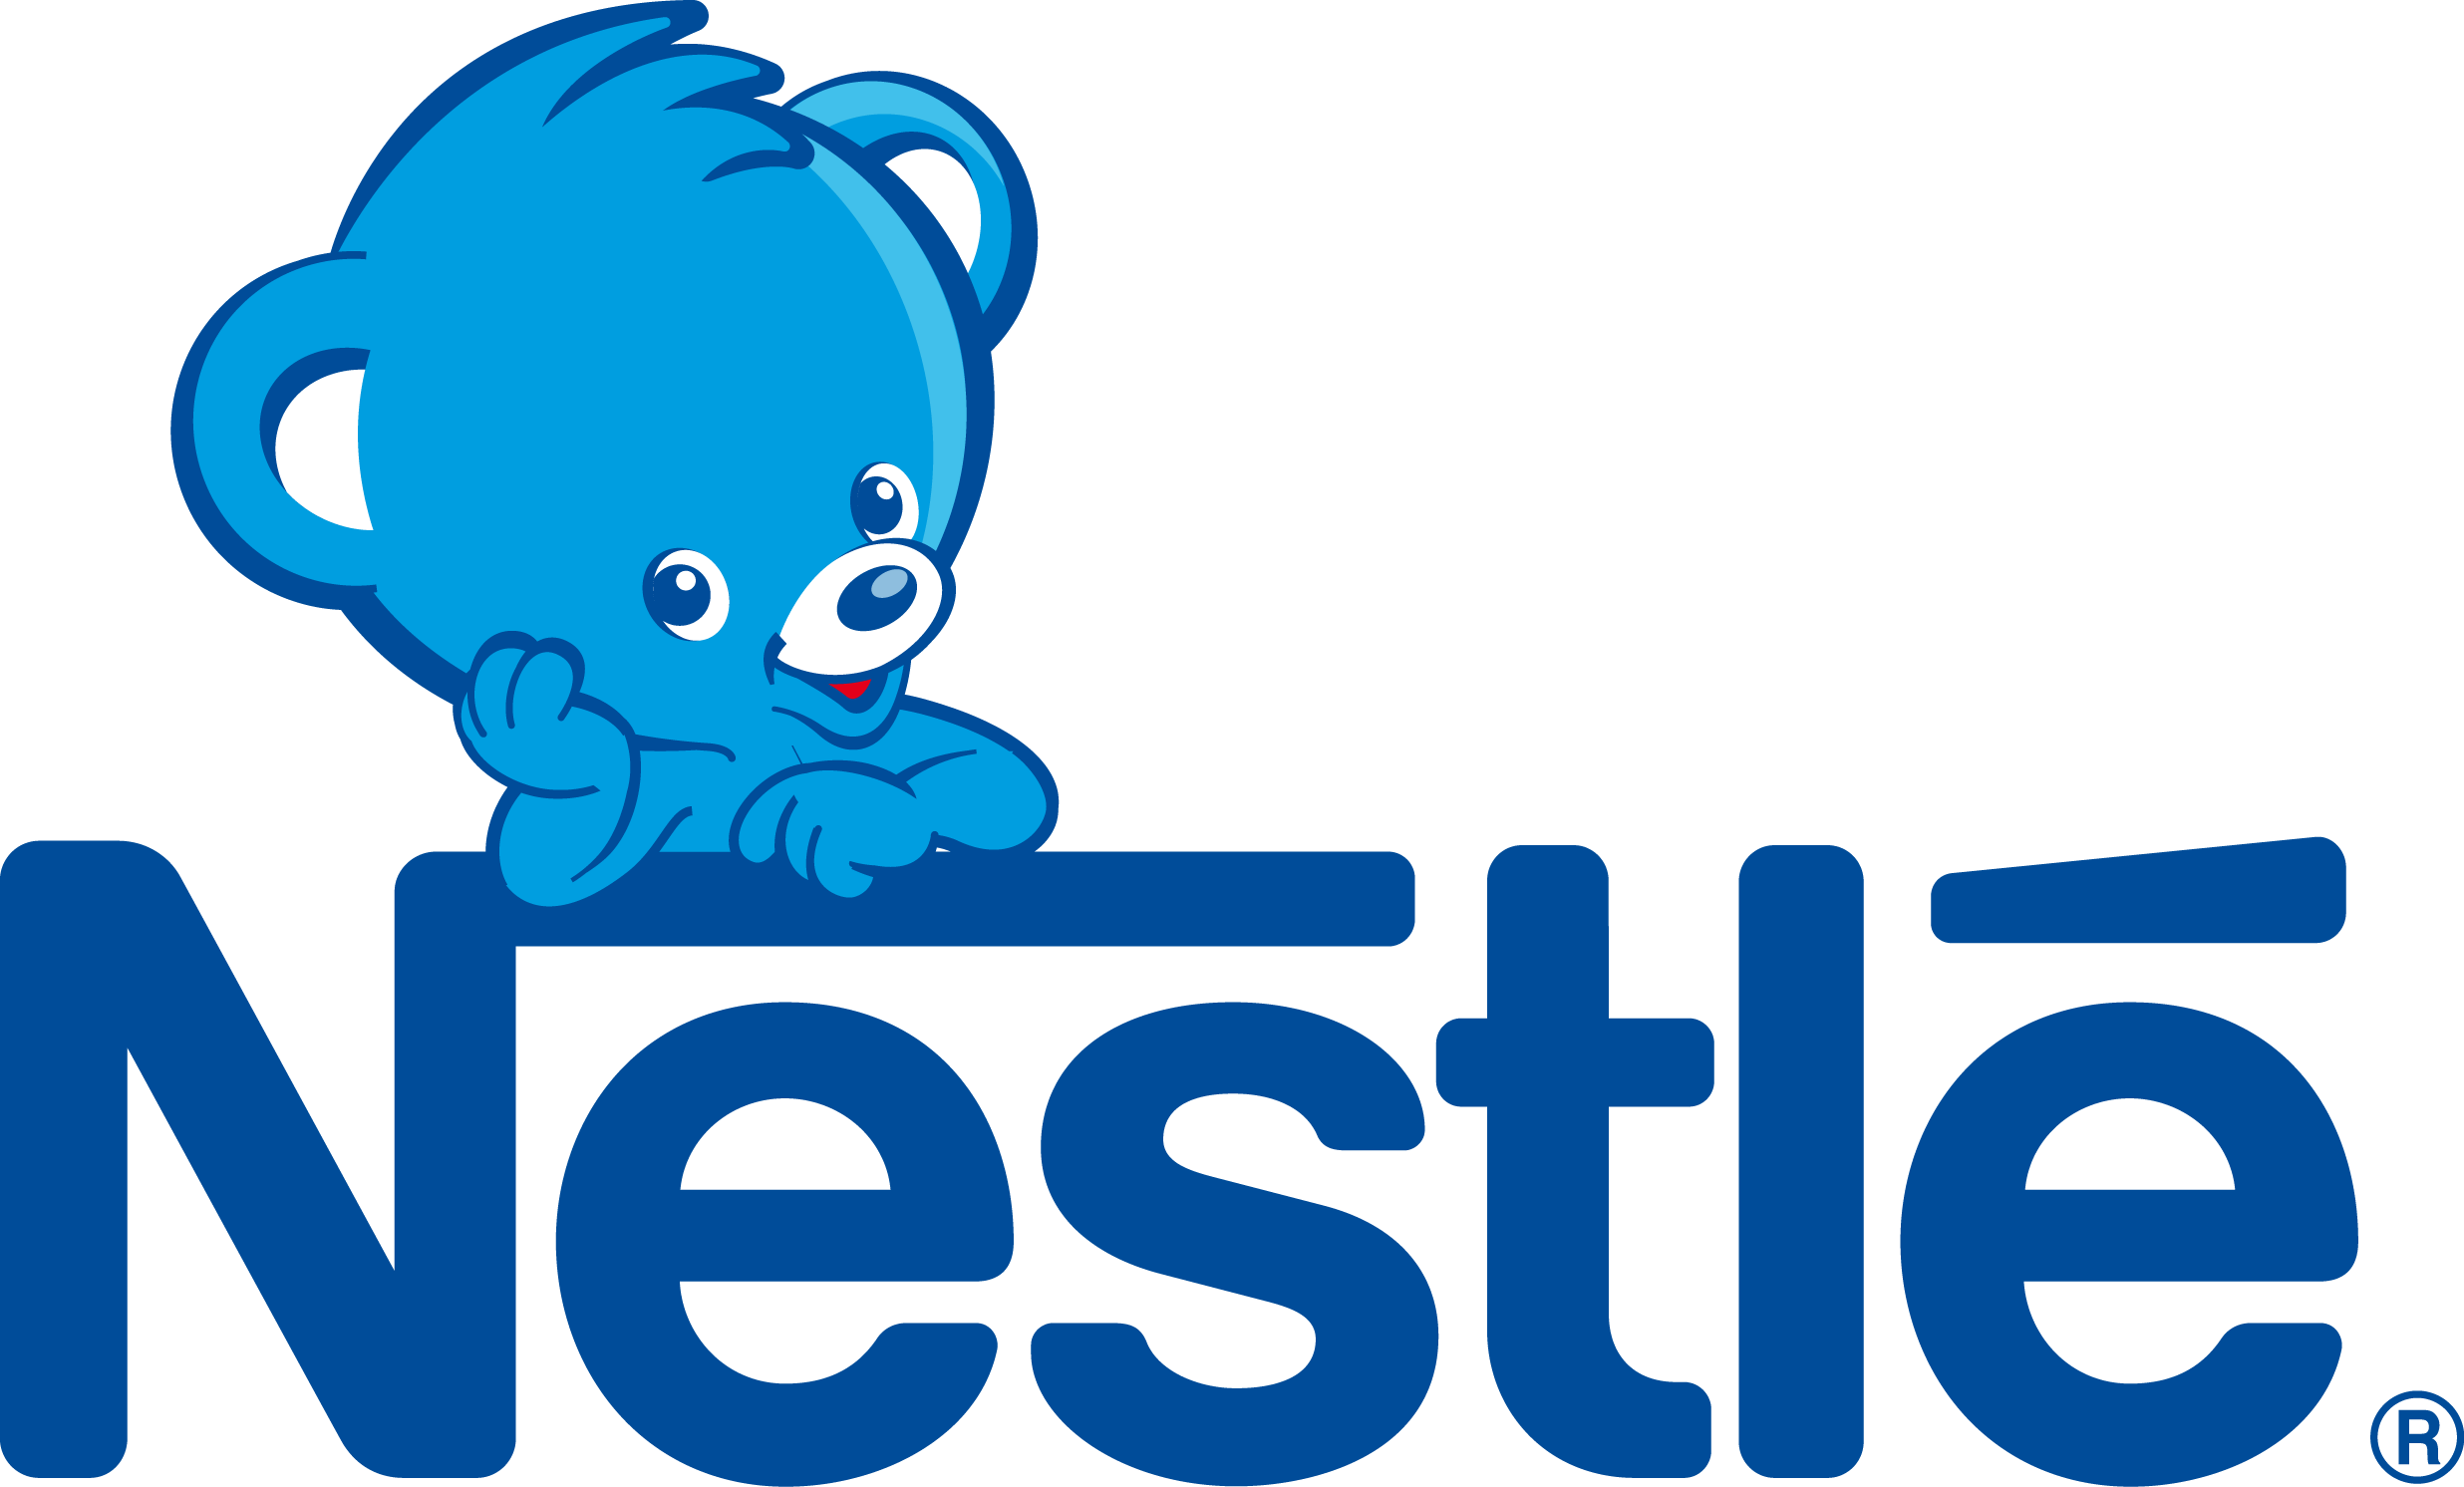 Nestlé Logo Transparent PNG